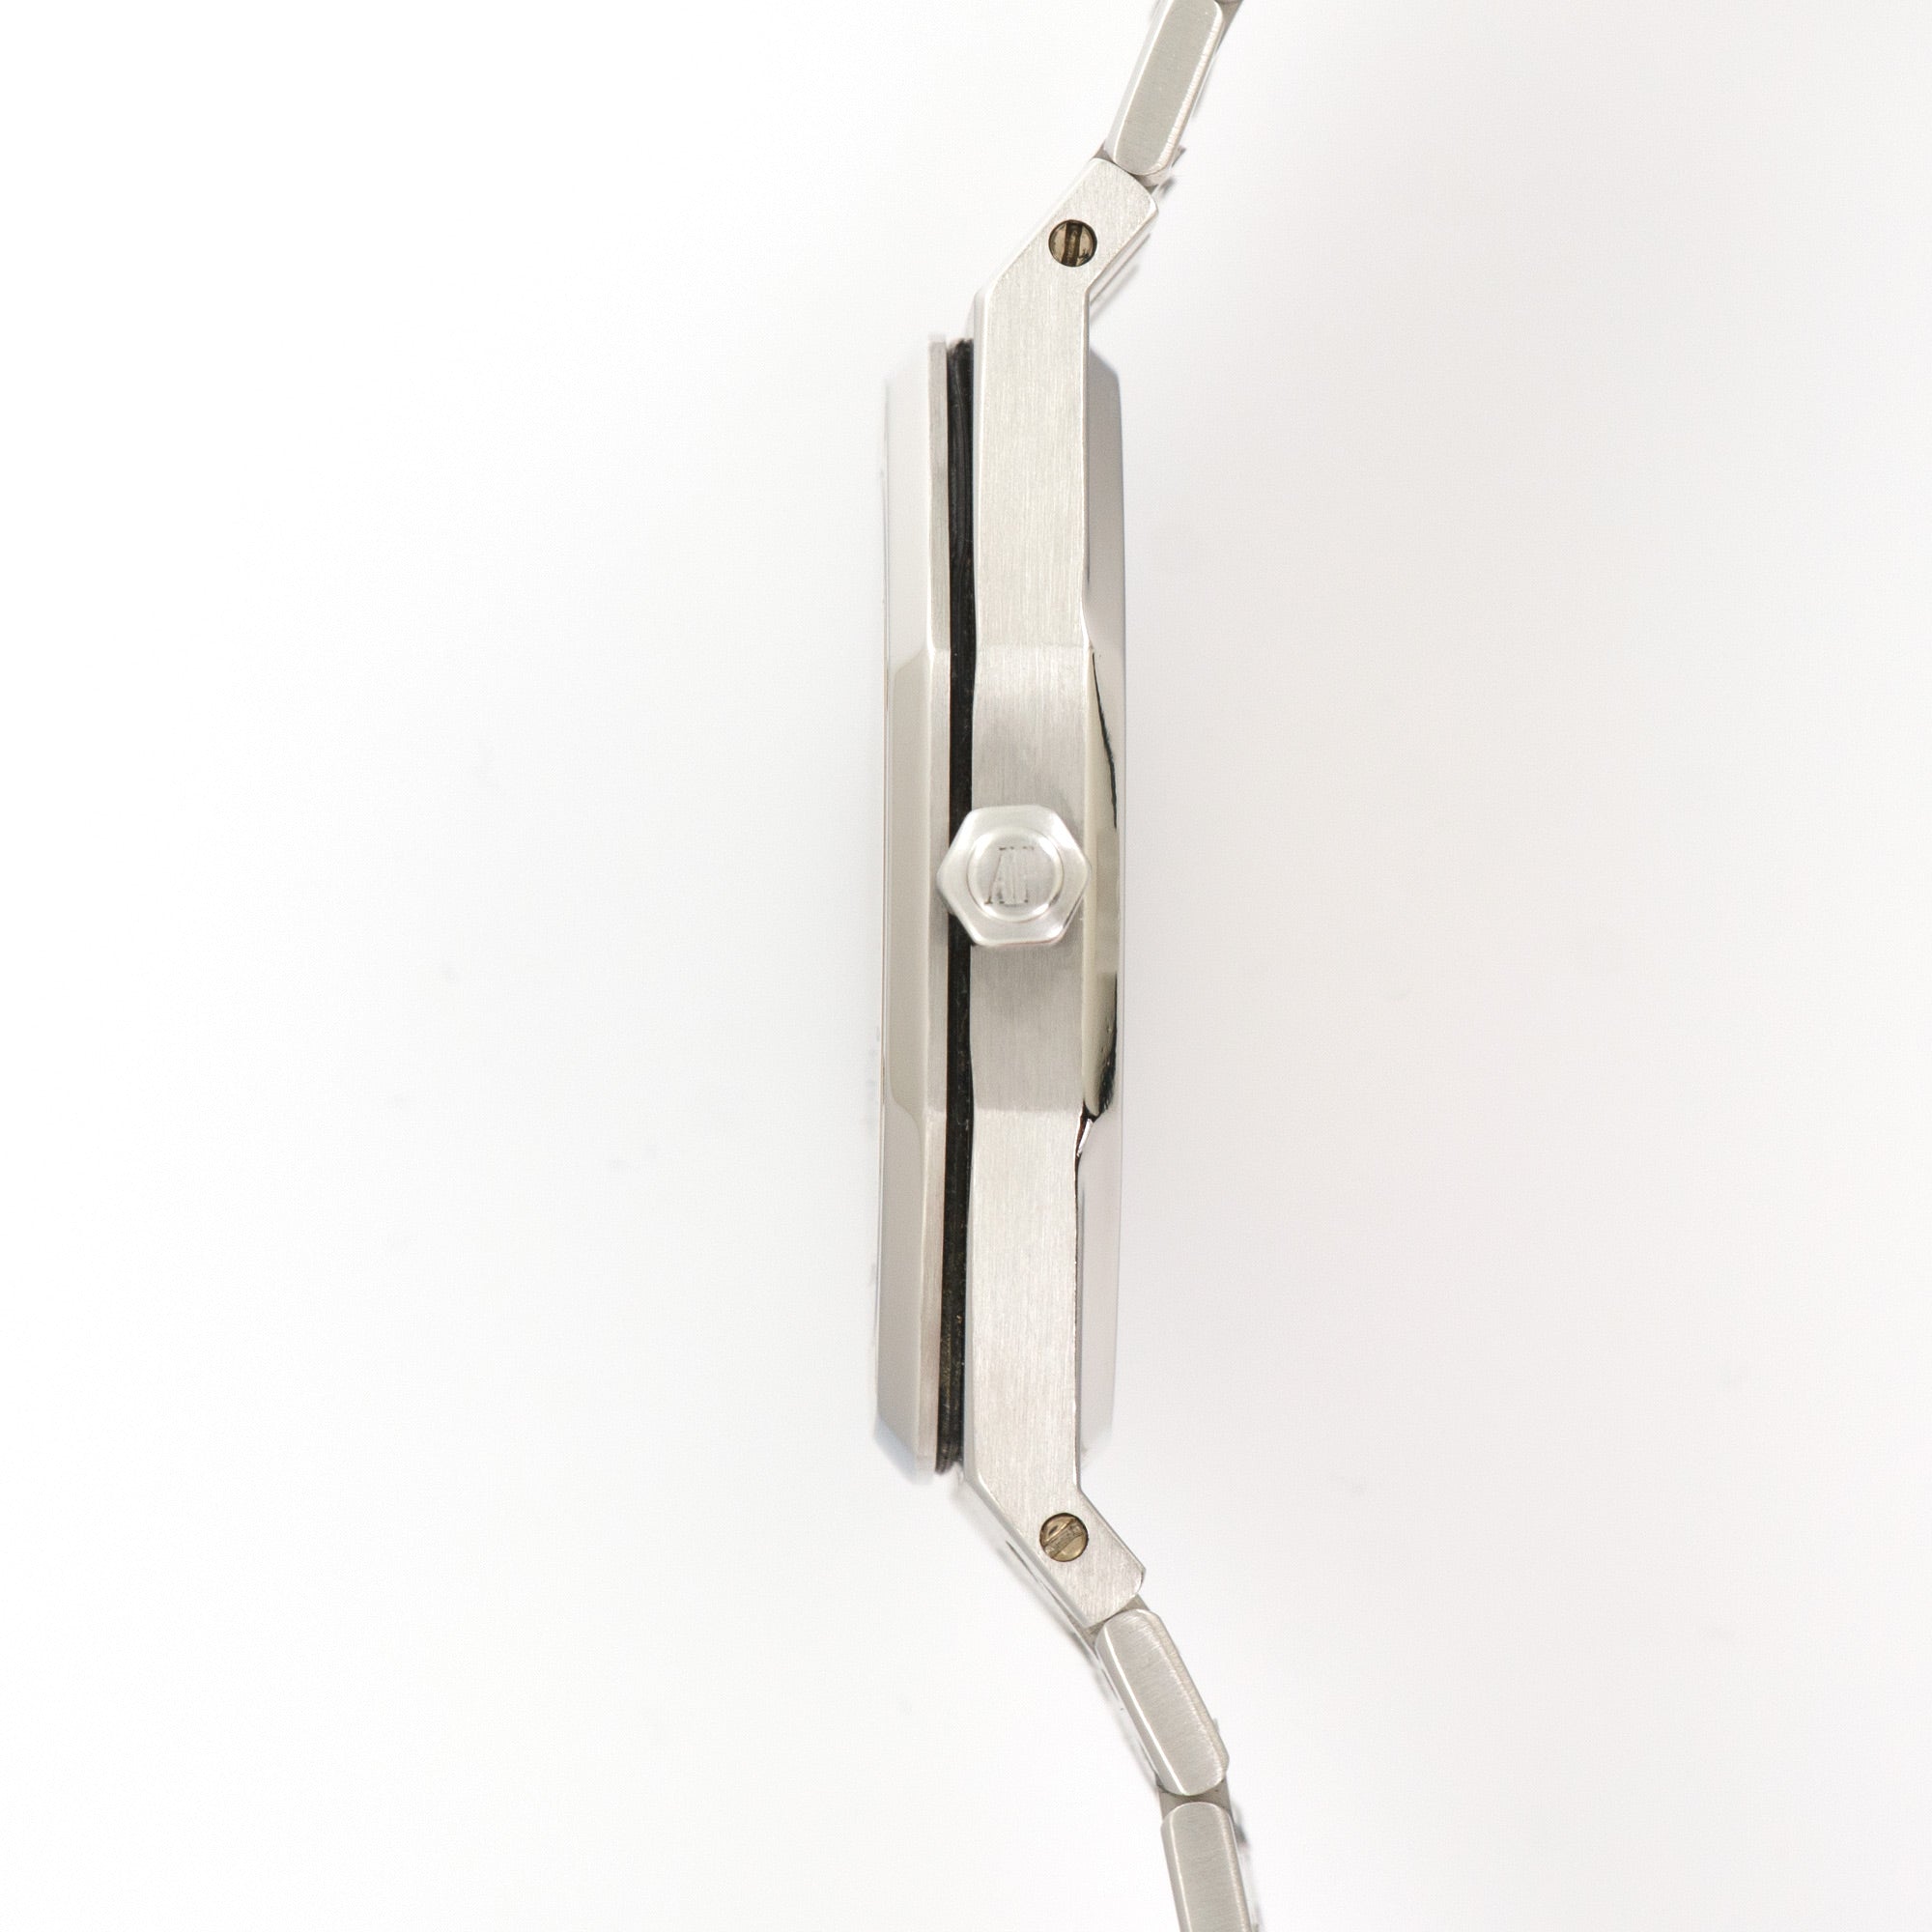 Audemars Piguet - Audemars Piguet Royal Oak Jumbo Firrst Series Watch Ref. 15202 - The Keystone Watches